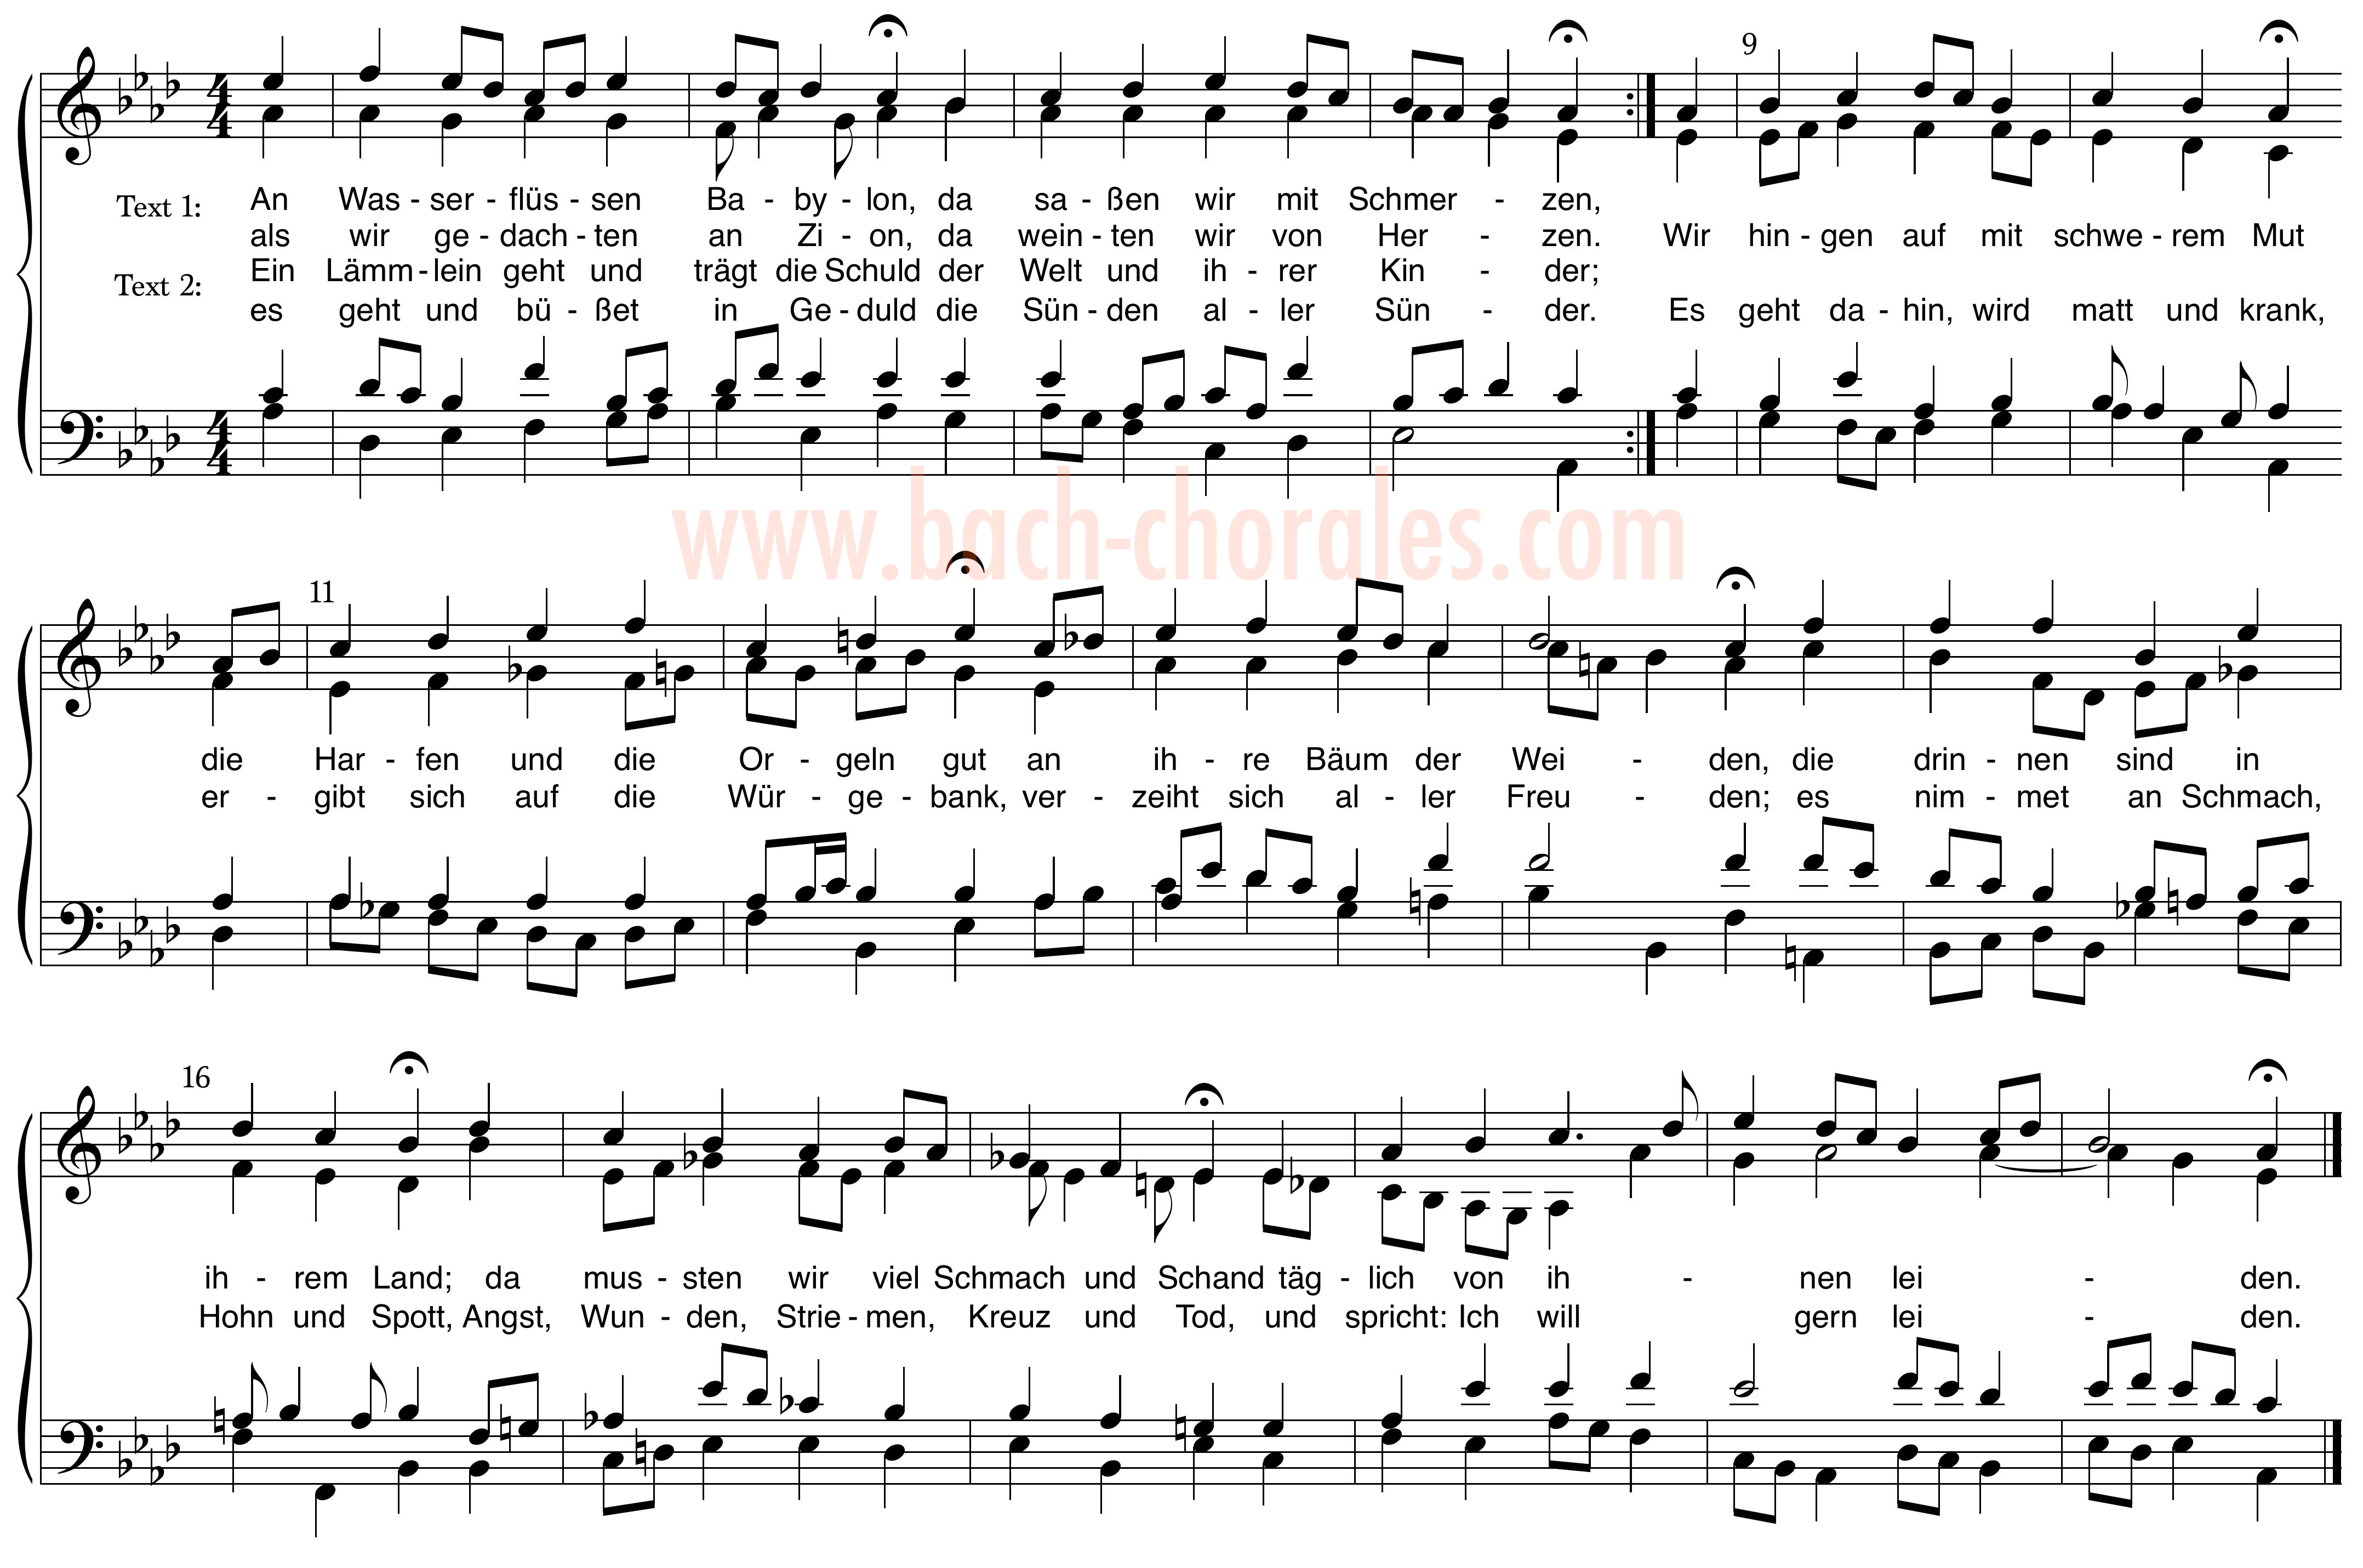 notenbeeld BWV 267 op https://www.bach-chorales.com/